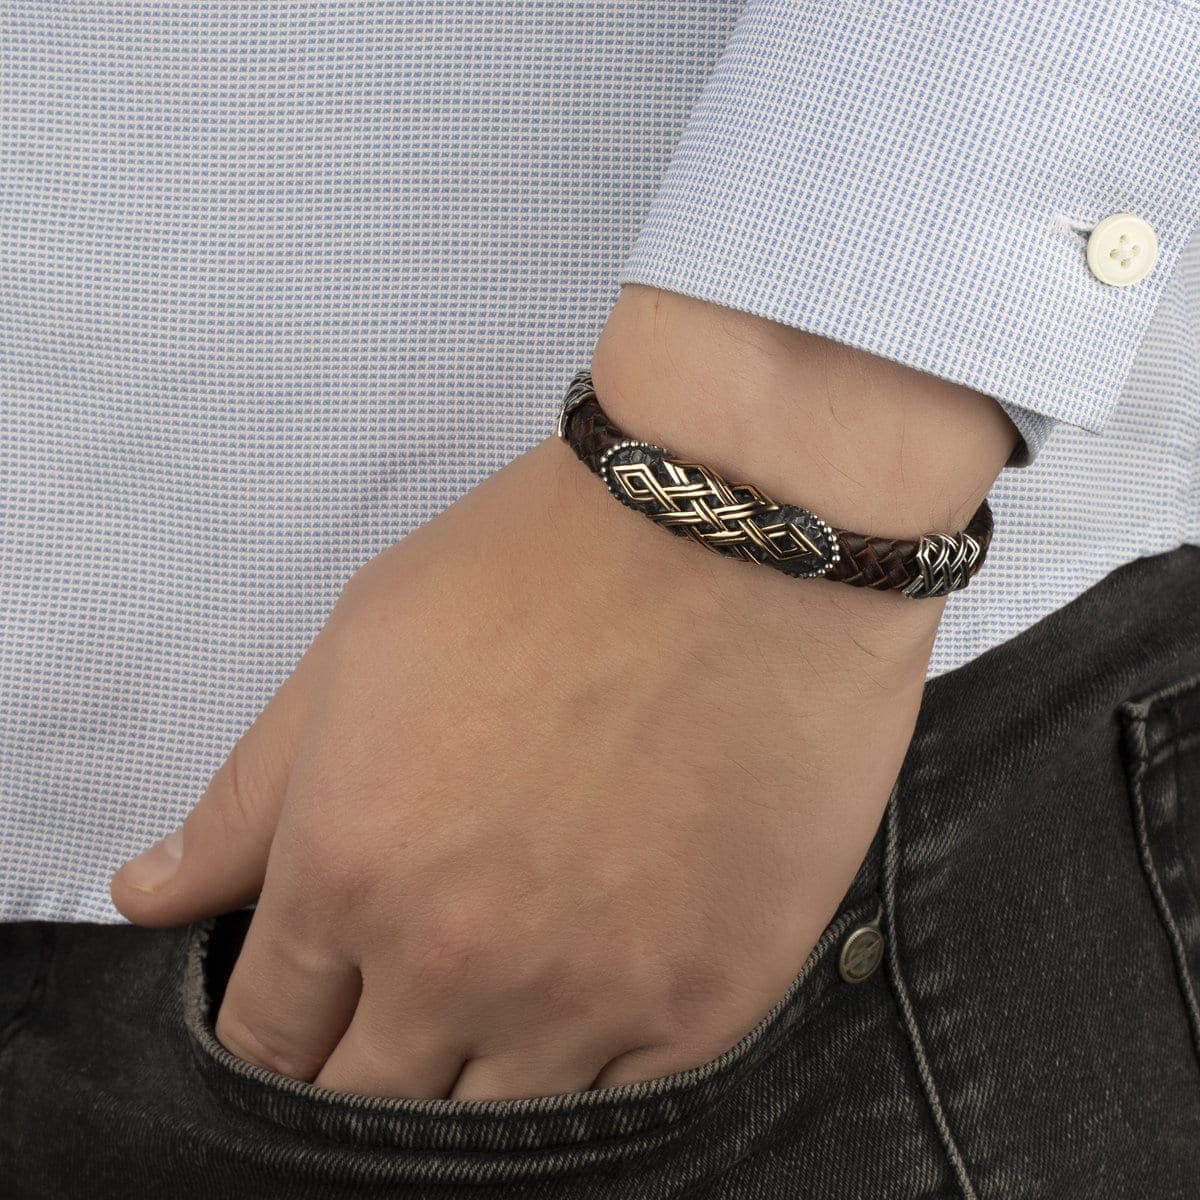 sterling silver mens bracelet